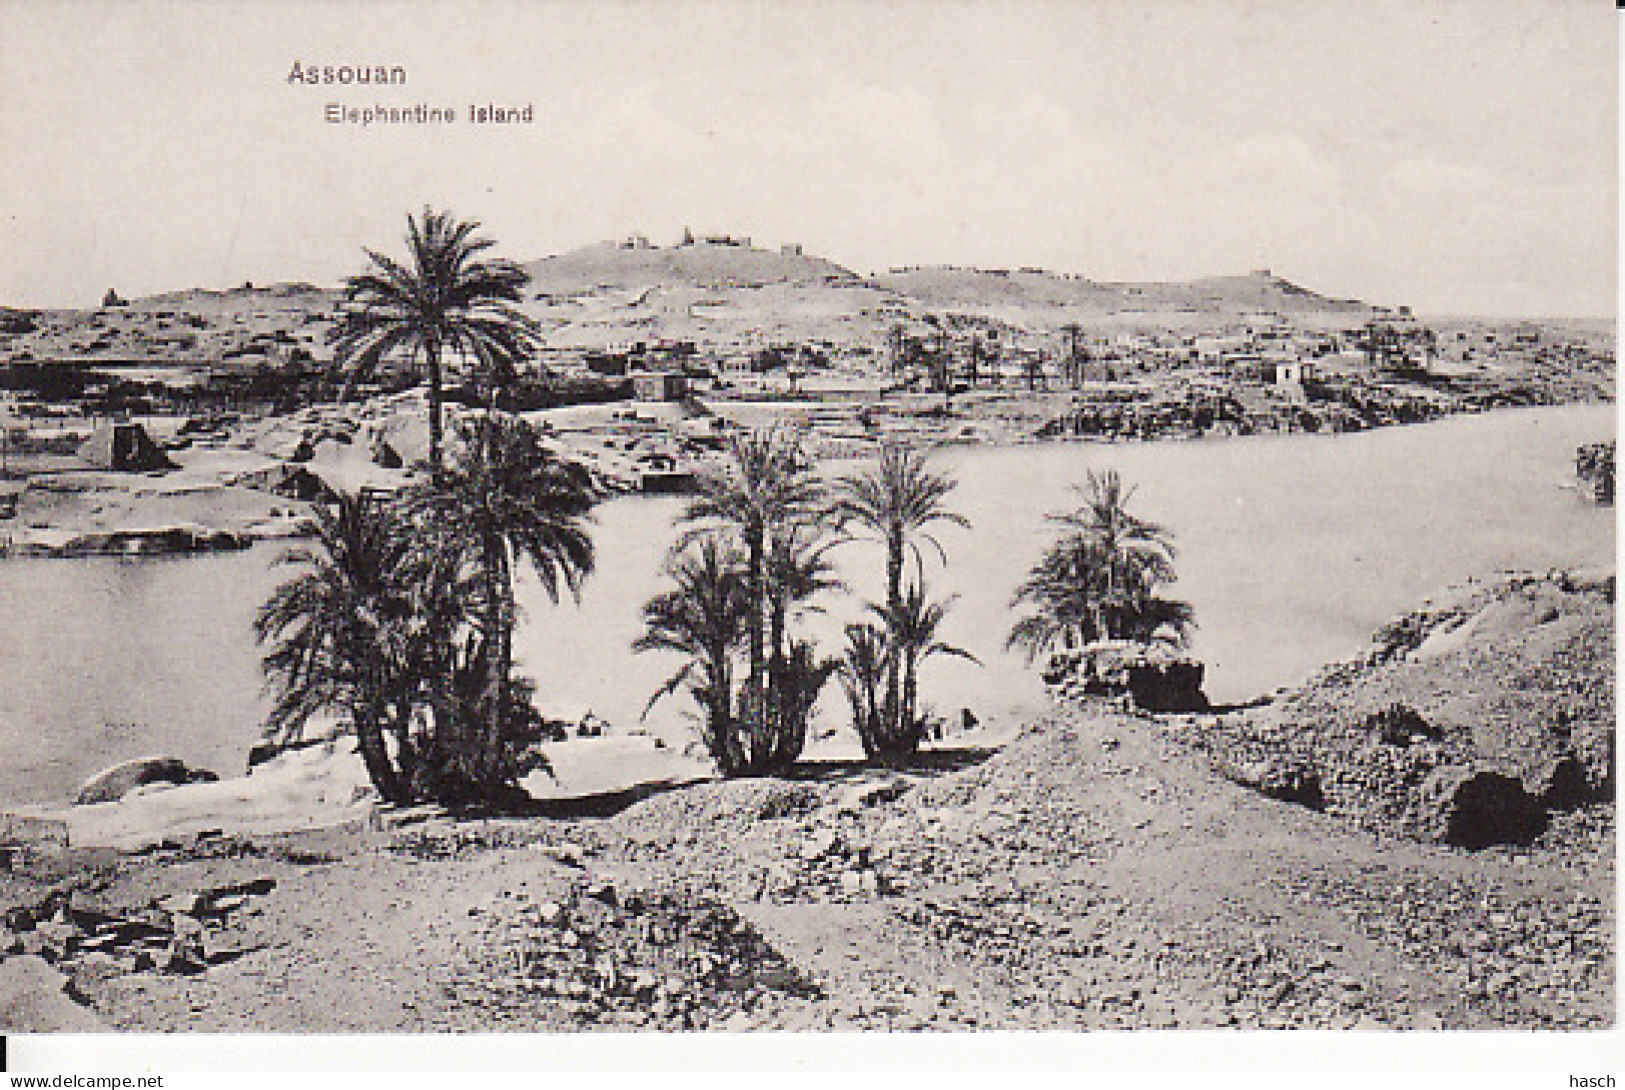 2815	49	Assouan, Elephantine Island  - Assouan